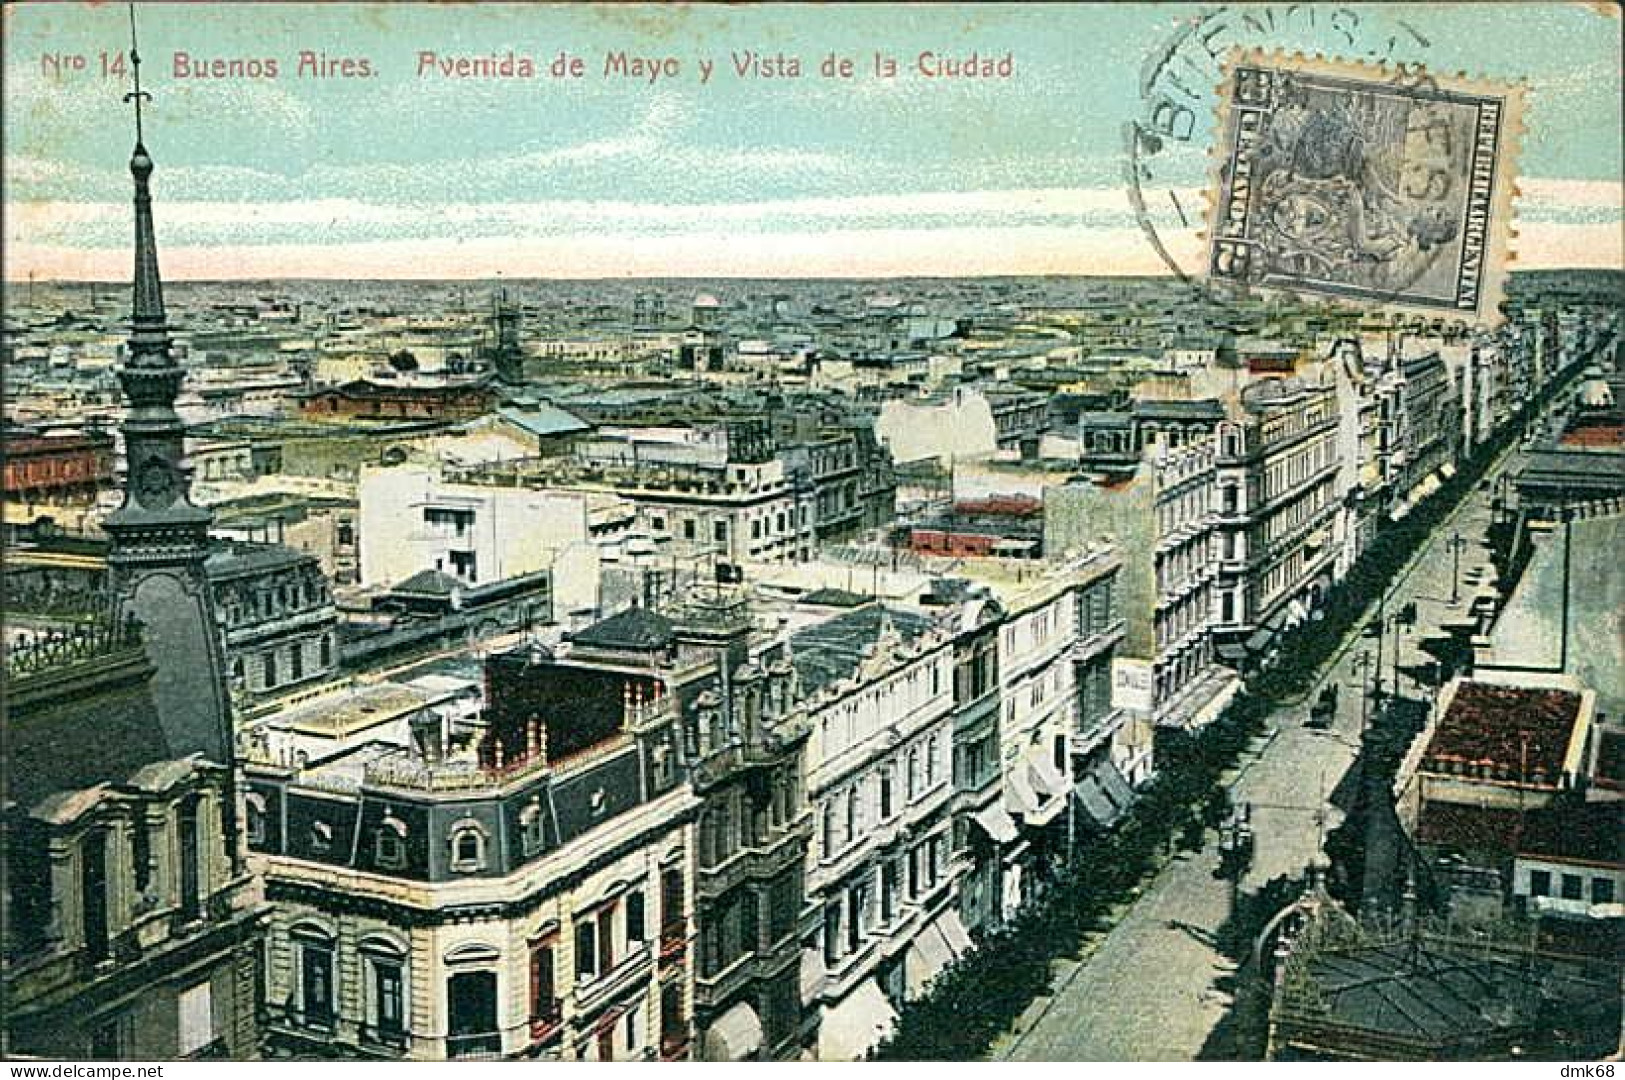 ARGENTINA - BUENOS AIRES - AVENIDA DE MAYO Y VISTA DE LA CIUDAD - EDICION FUMAGALLI - 1910s / STAMP (17835) - Argentine